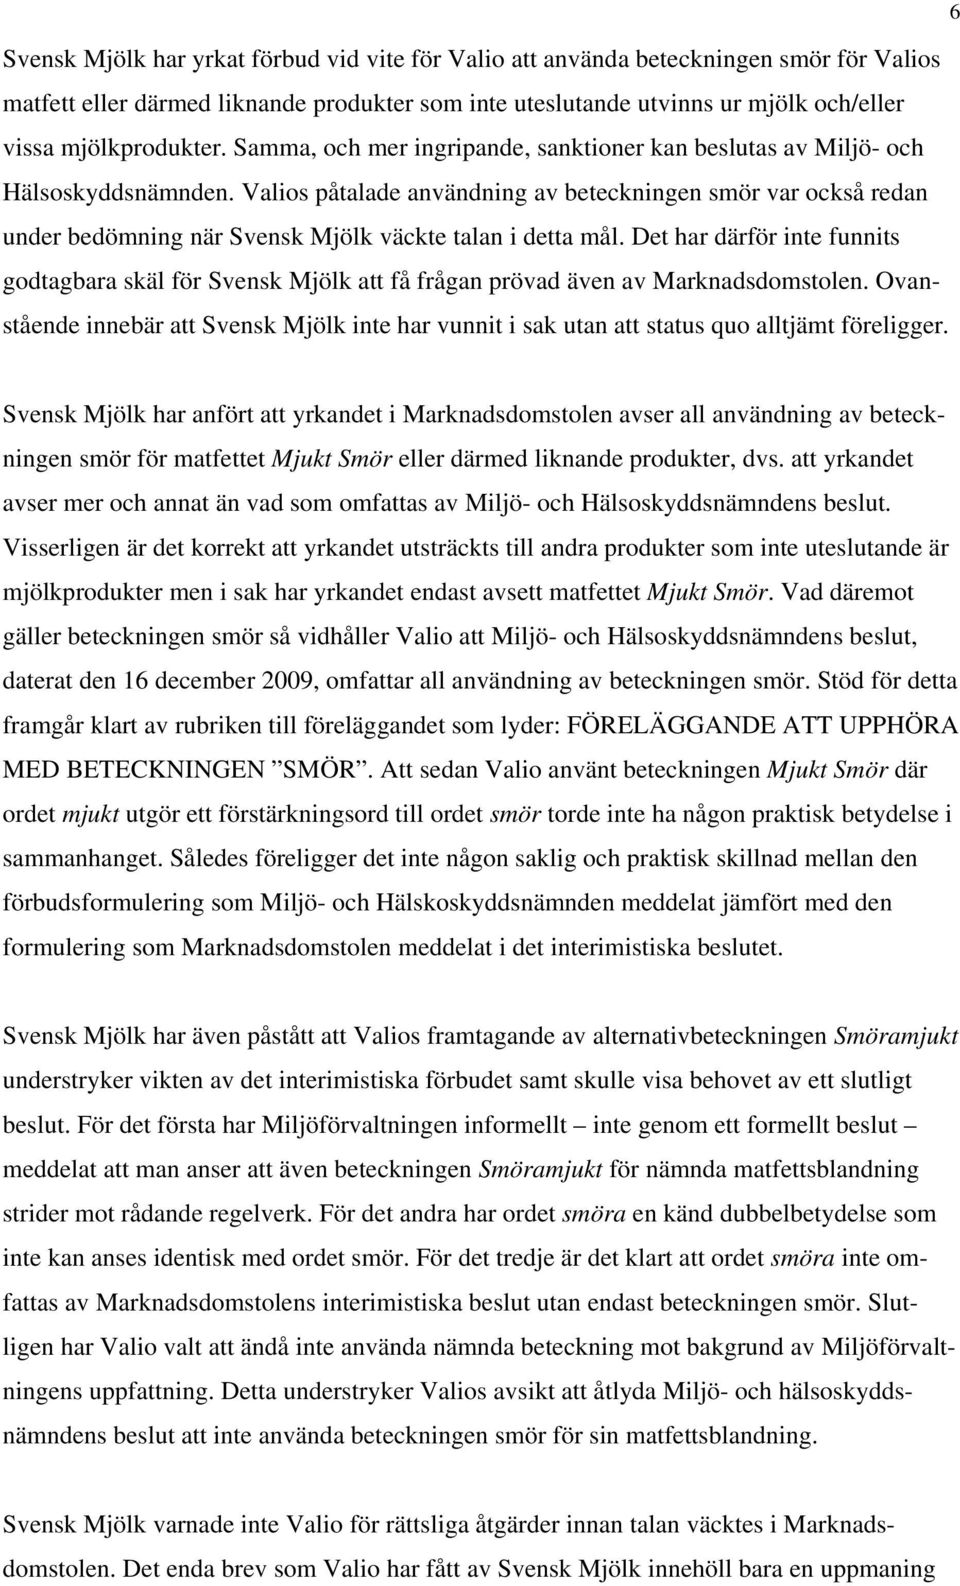 Valios påtalade användning av beteckningen smör var också redan under bedömning när Svensk Mjölk väckte talan i detta mål.